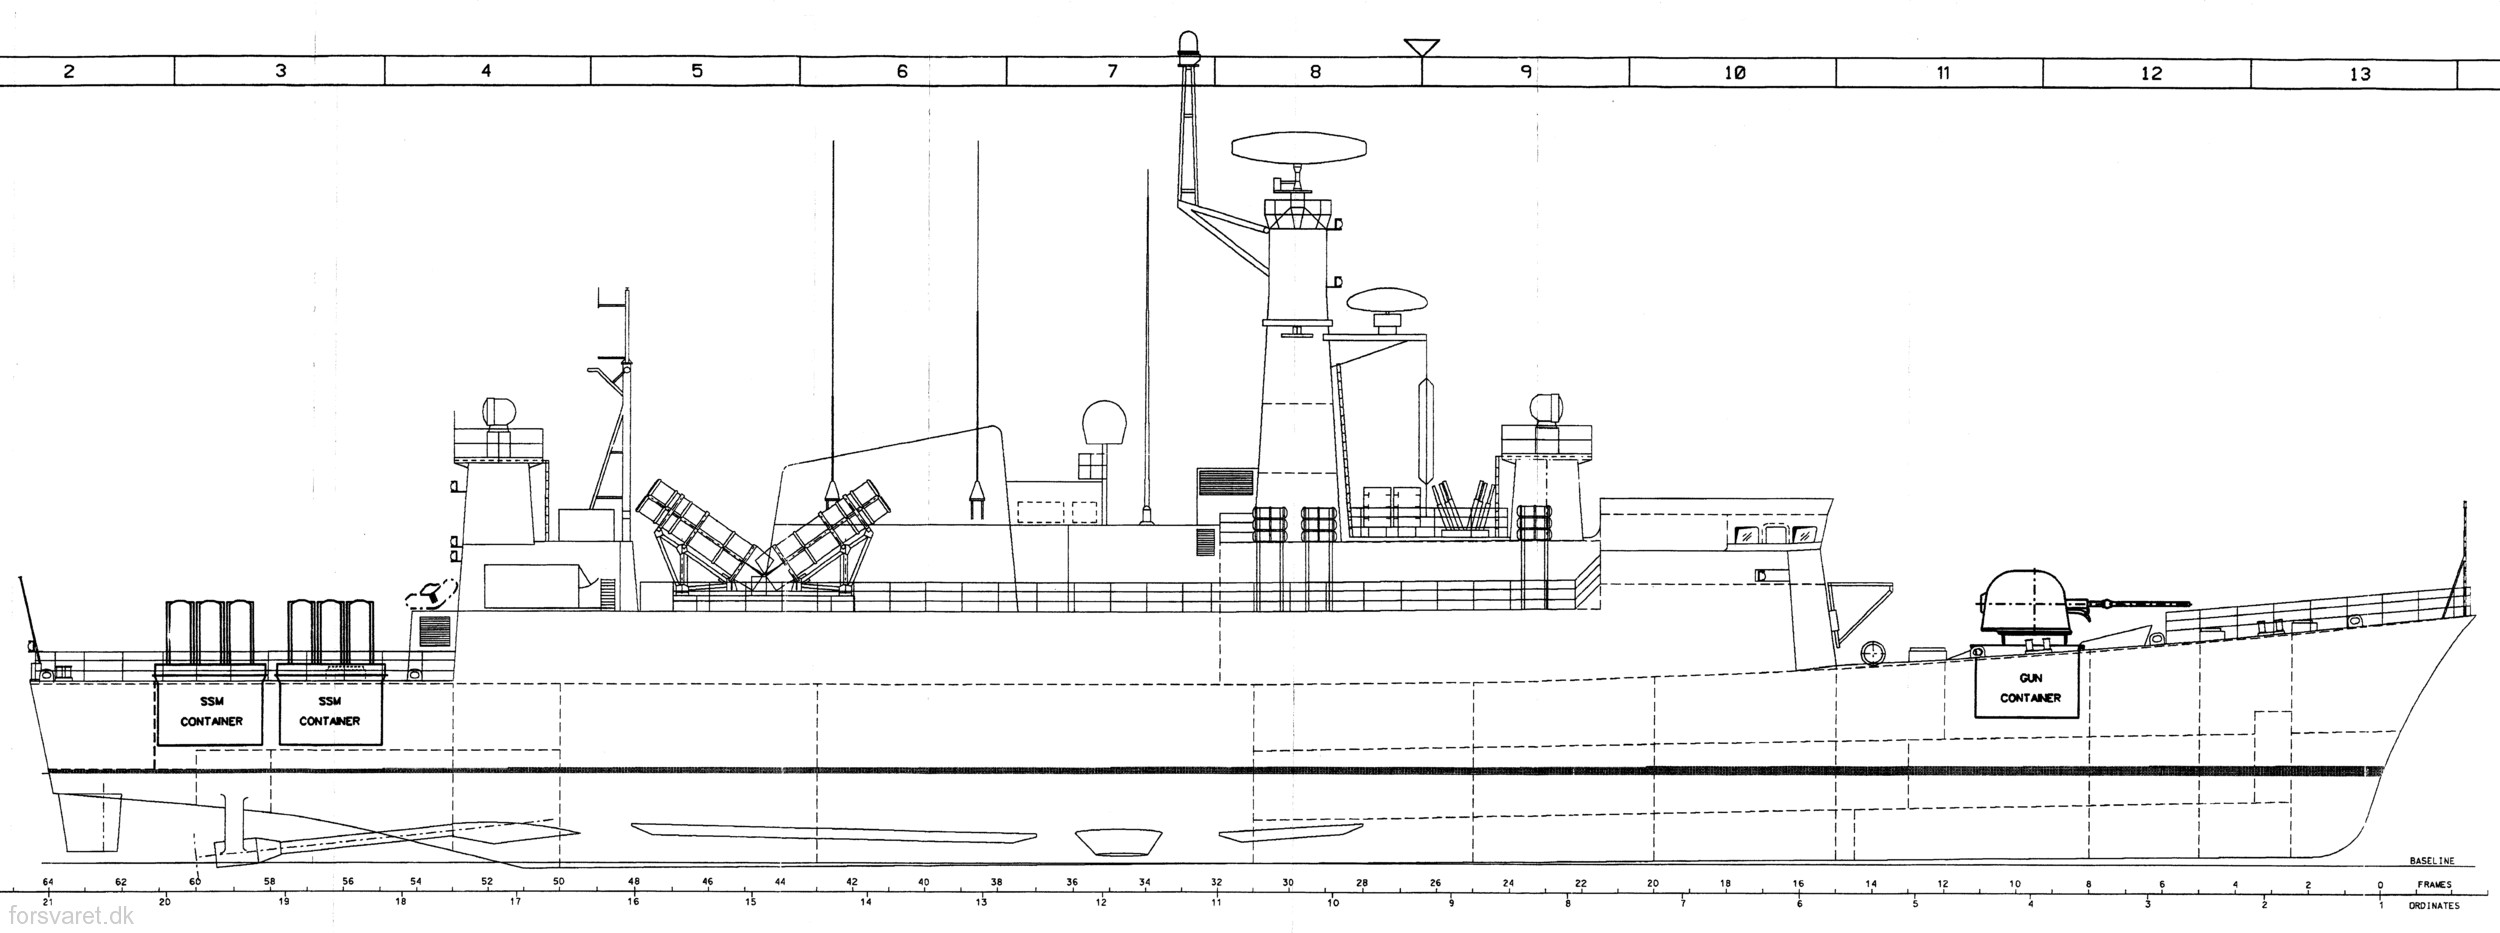 f-354 hdms niels juel class corvette royal danish navy kongelige danske marine kdm 121 drawing